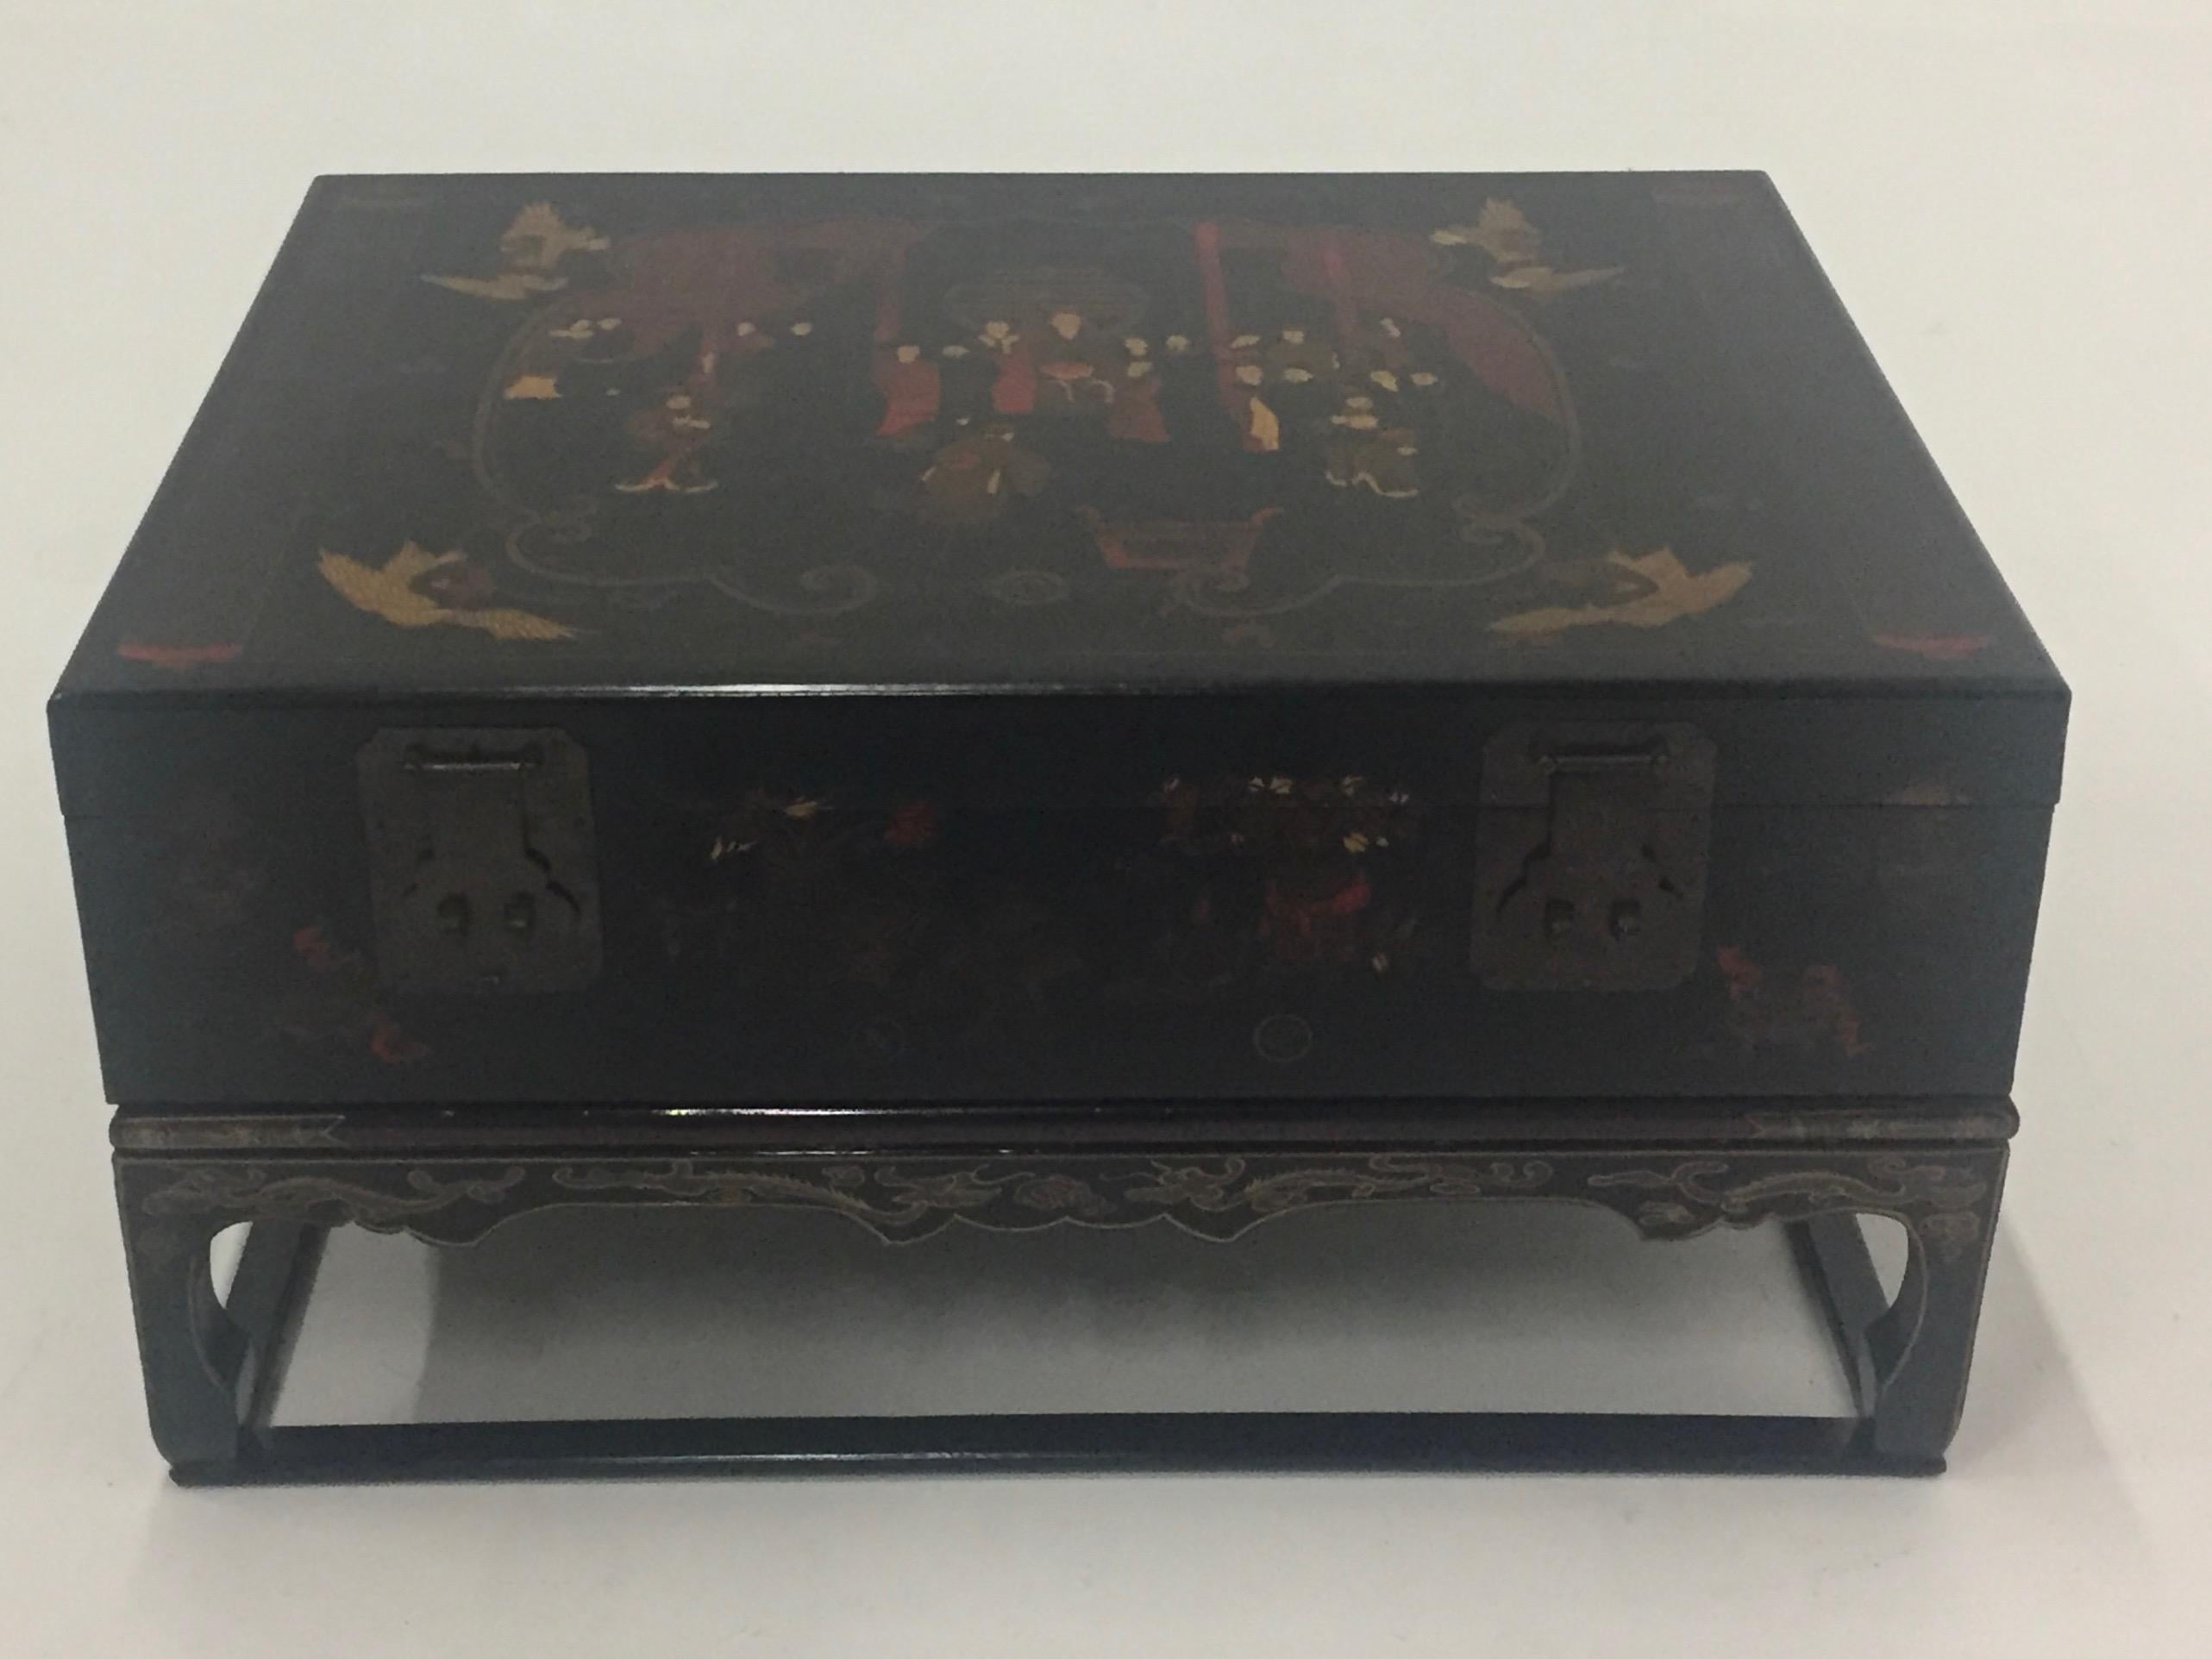 Une table basse chinoise intrigante en noir, or et rouge, avec une boîte magnifiquement décorée et des ferrures d'origine, qui repose sur un support de style asiatique ébonisé. La boîte s'ouvre pour révéler un espace de rangement et est tapissée